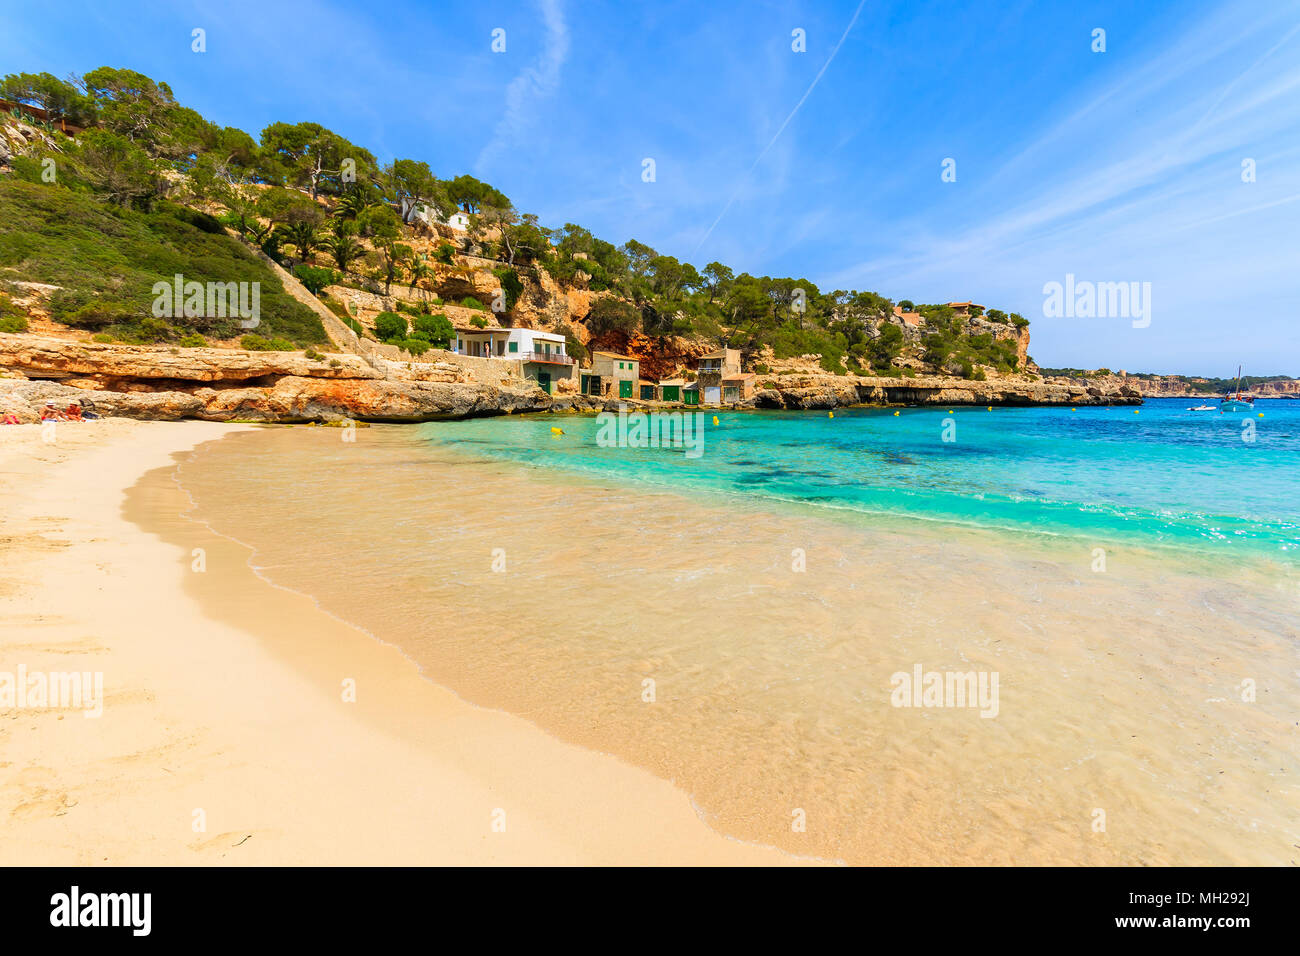 Idyllisch und ruhig gelegenen Sandstrand Cala Llombards Strand, Insel Mallorca, Spanien Stockfoto